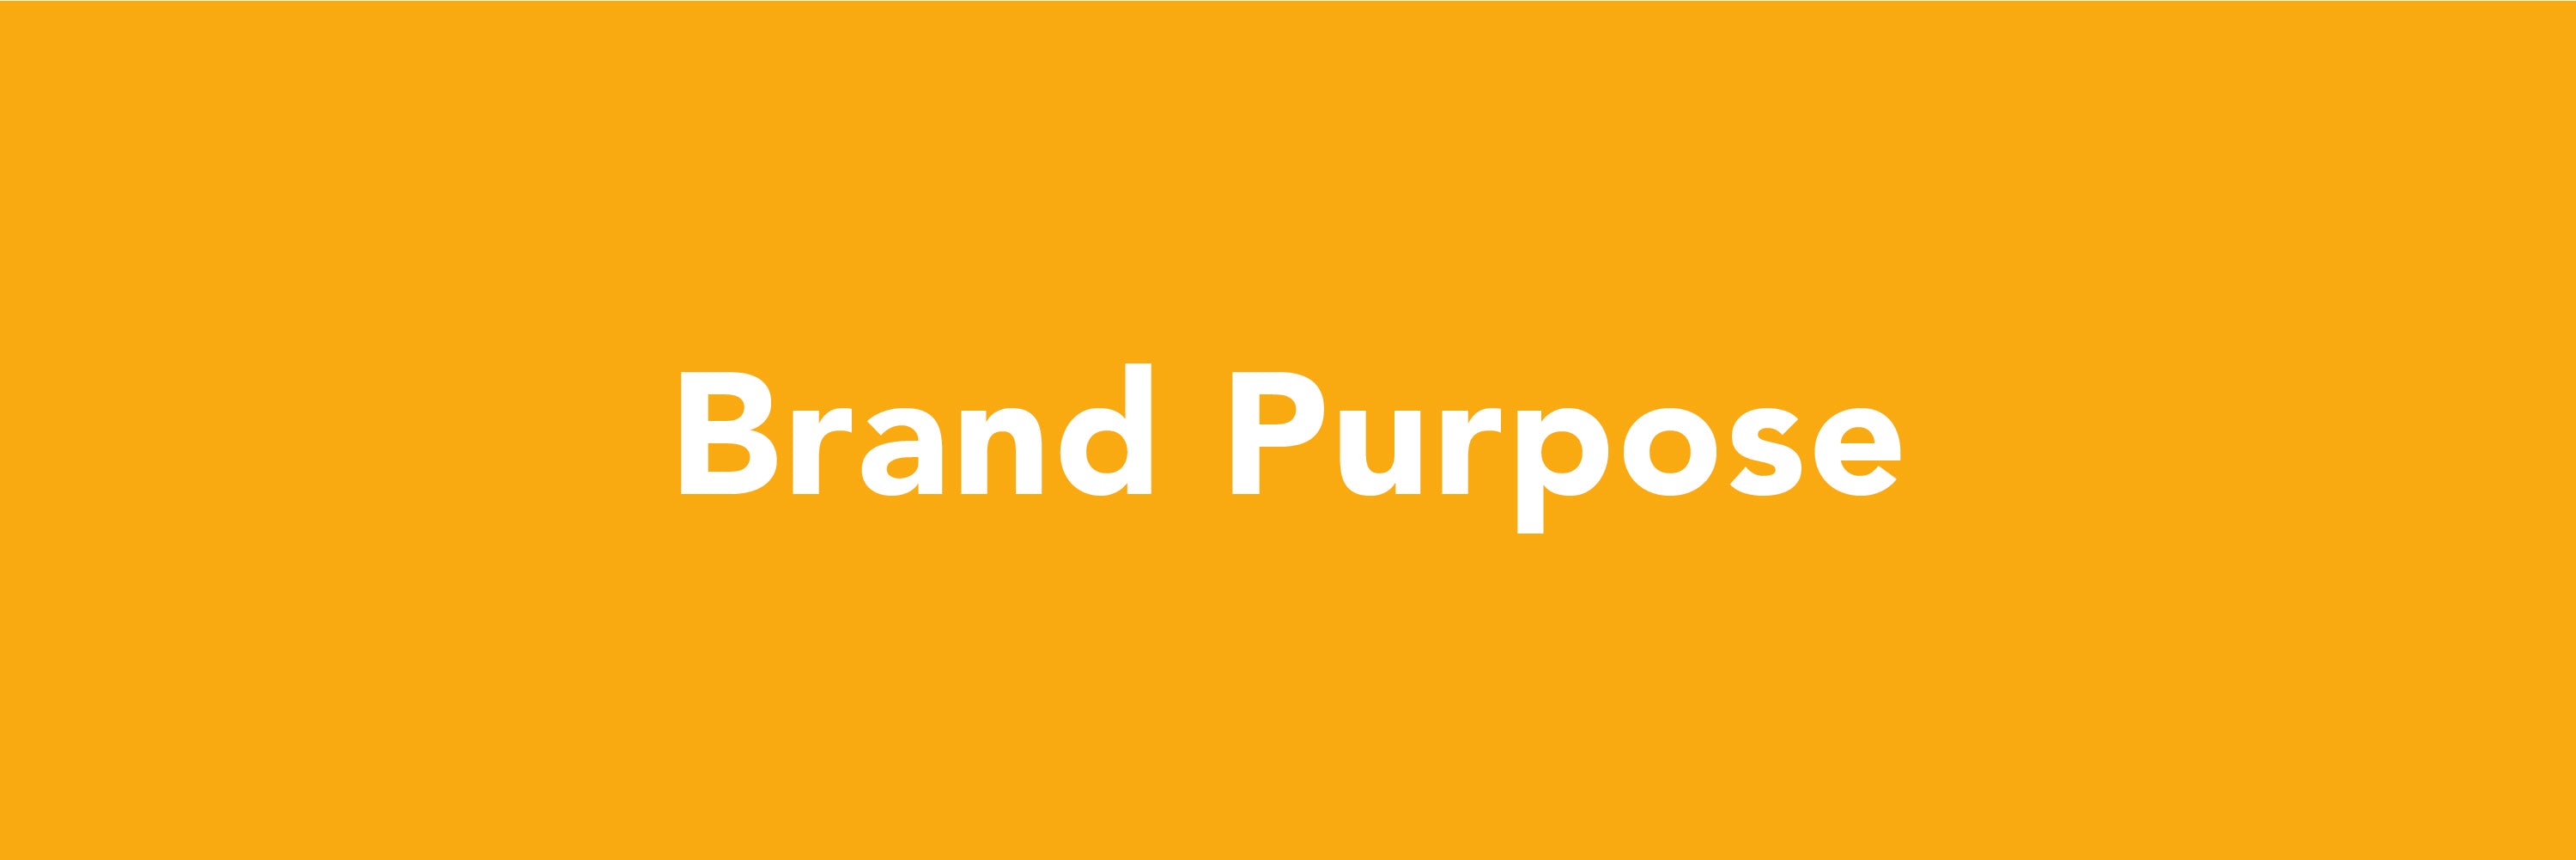 Brand Purpose - Simplelifeco UK